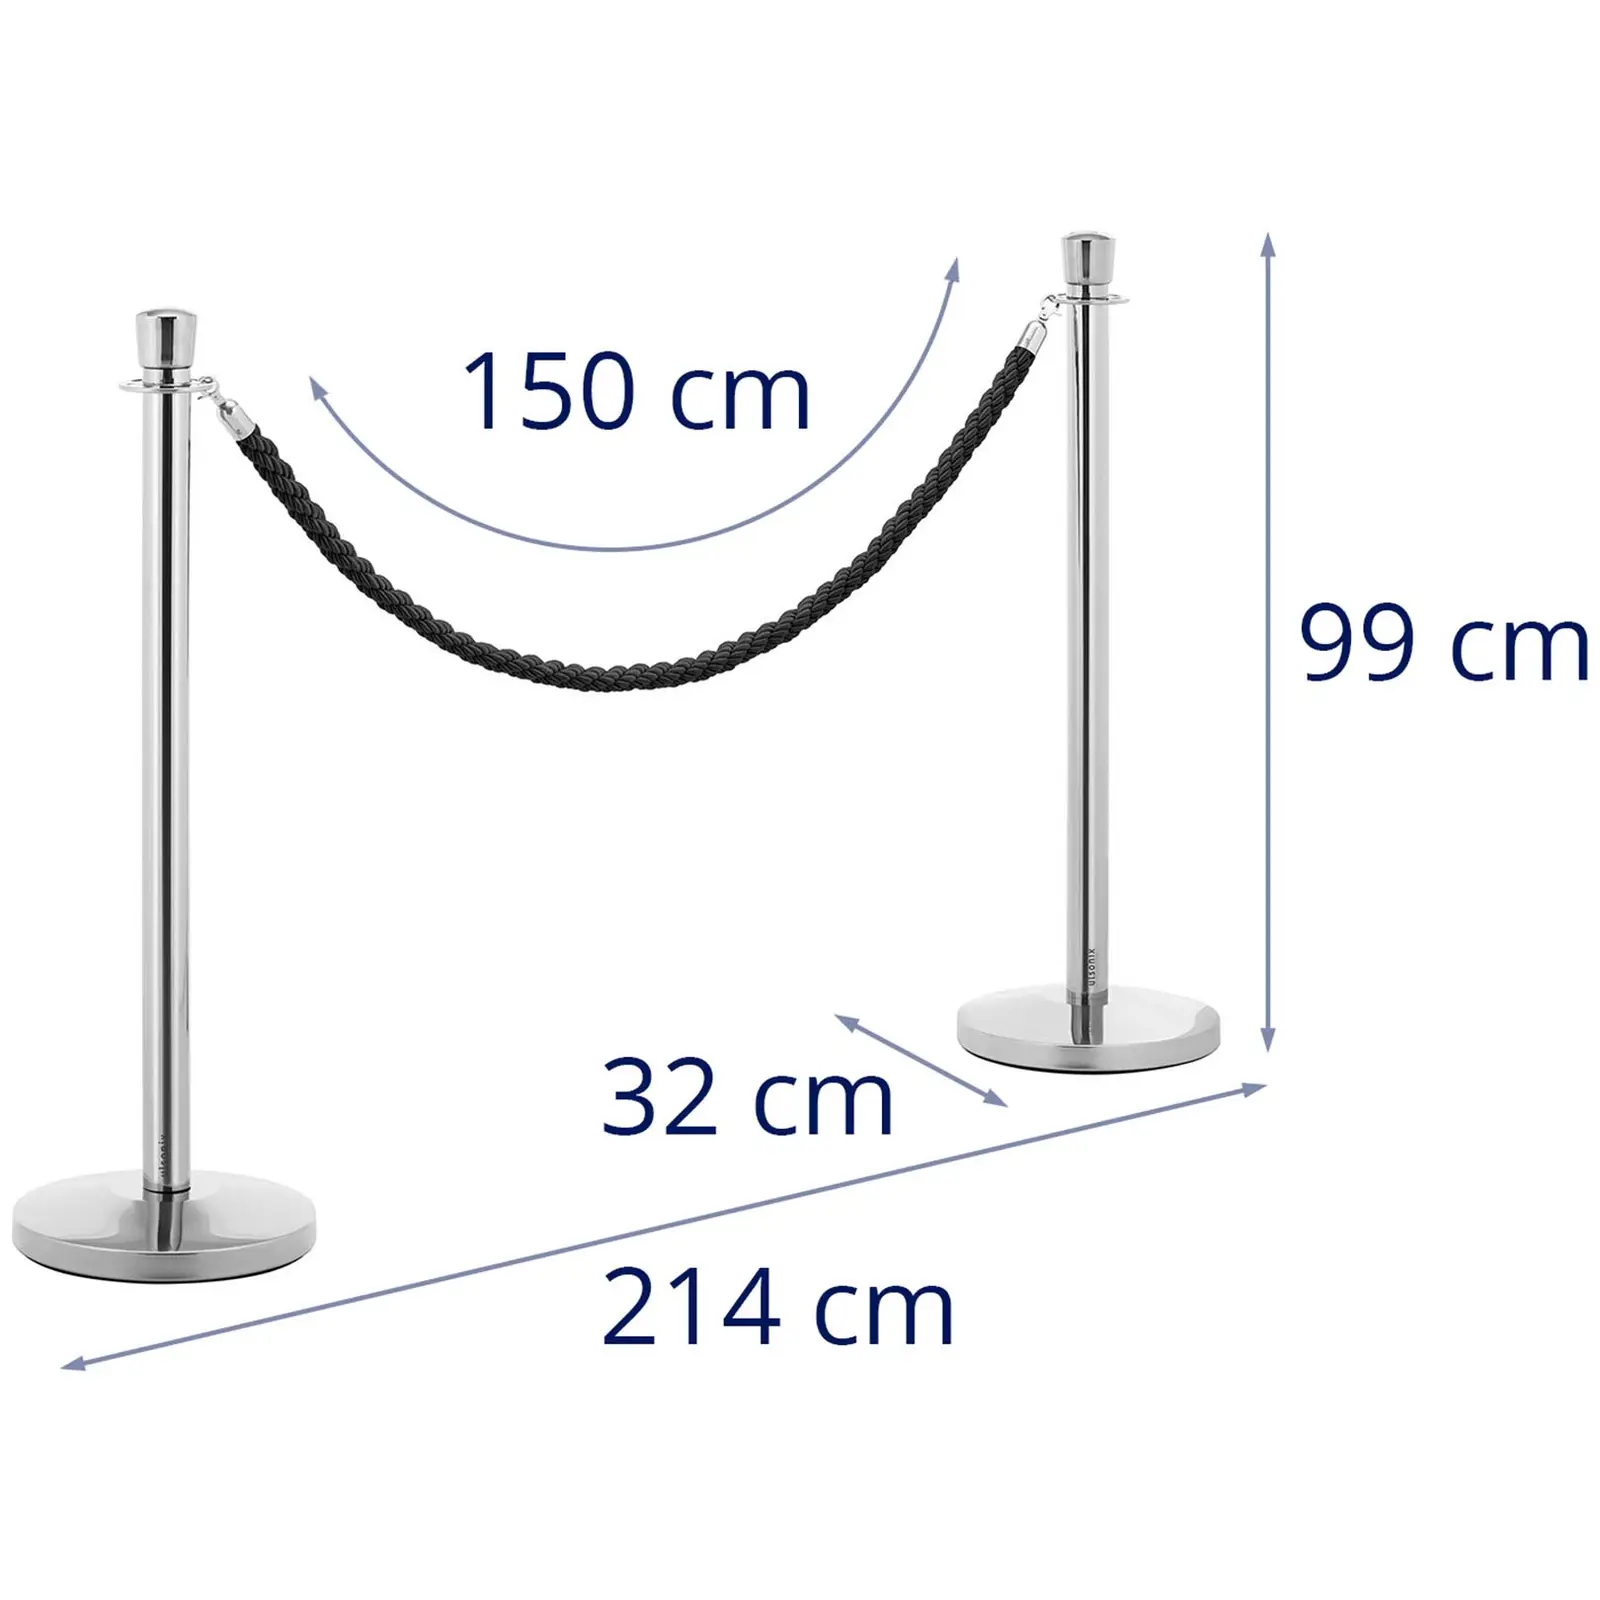 2 postes para barrera con cordón - 200 cm - acero inoxidable pulido